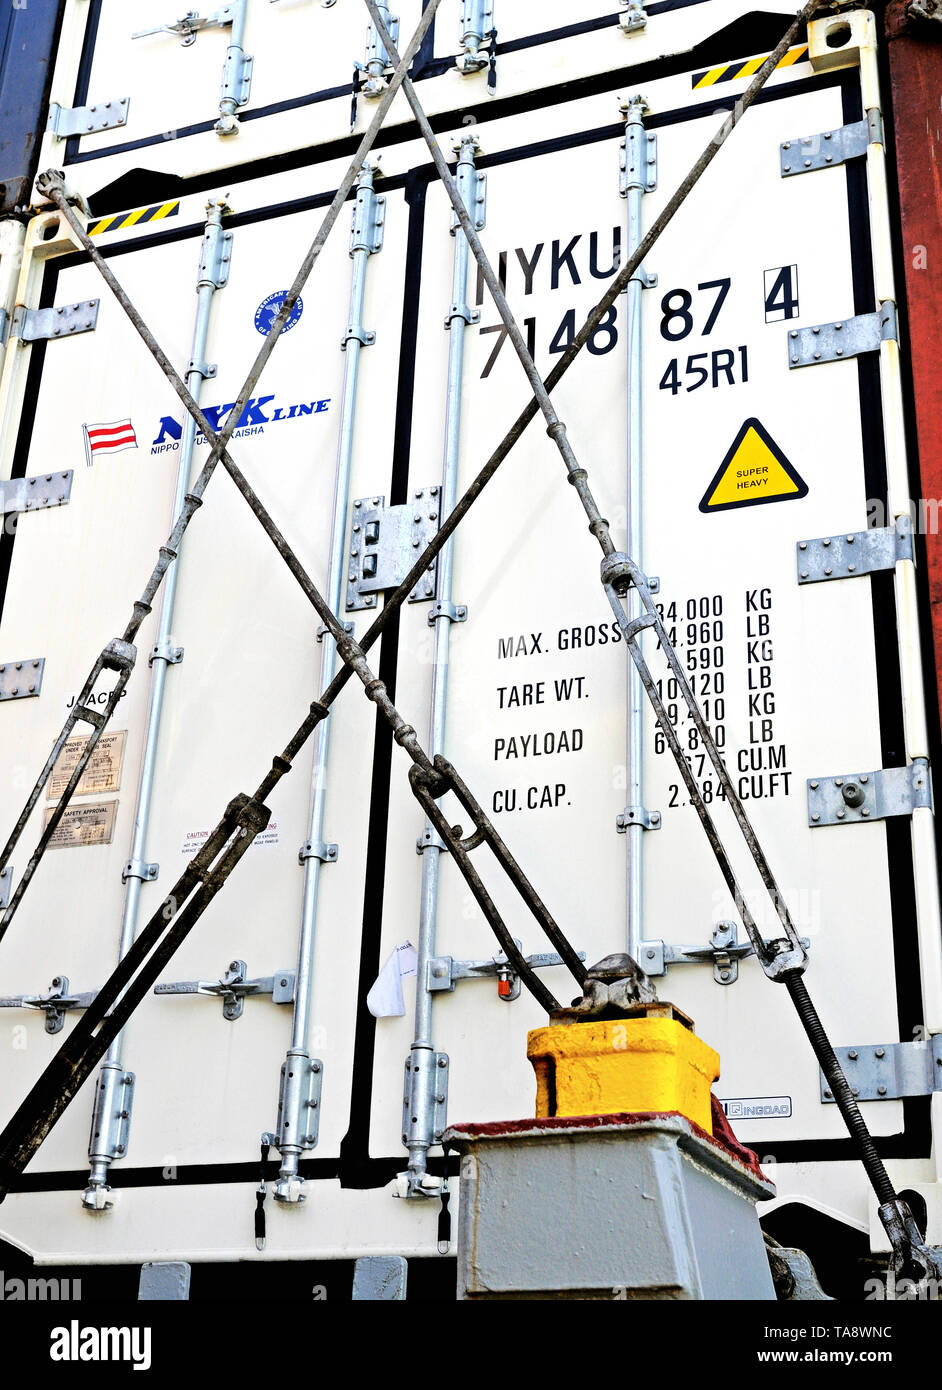 El mar del sur de china - 2008.08.31: contenedores refrigerados estibados en la cubierta de la OMI containership asta rickmers (9212046) Foto de stock